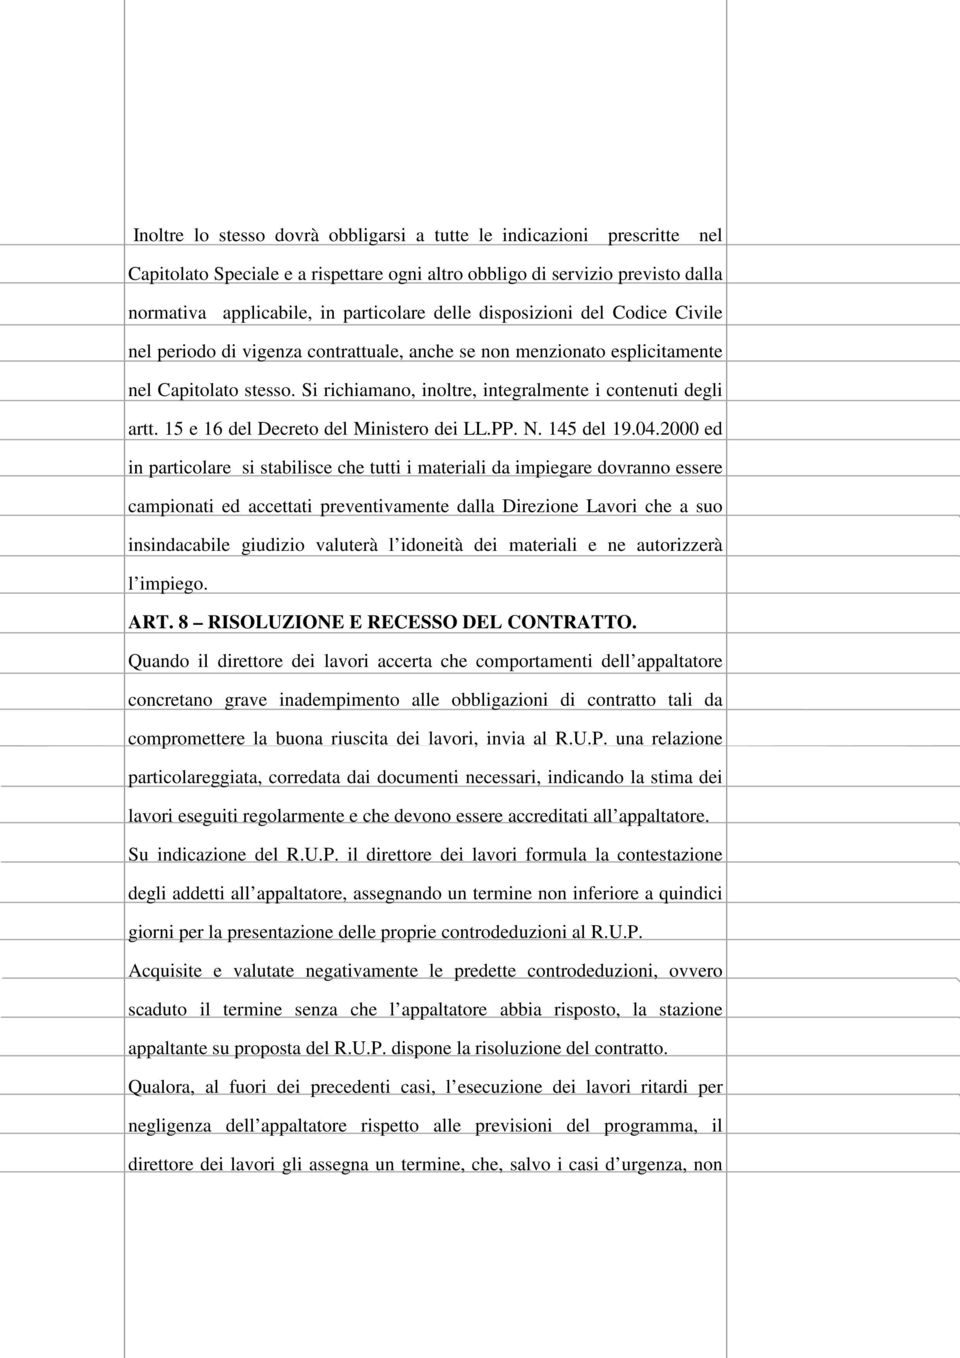 15 e 16 del Decreto del Ministero dei LL.PP. N. 145 del 19.04.